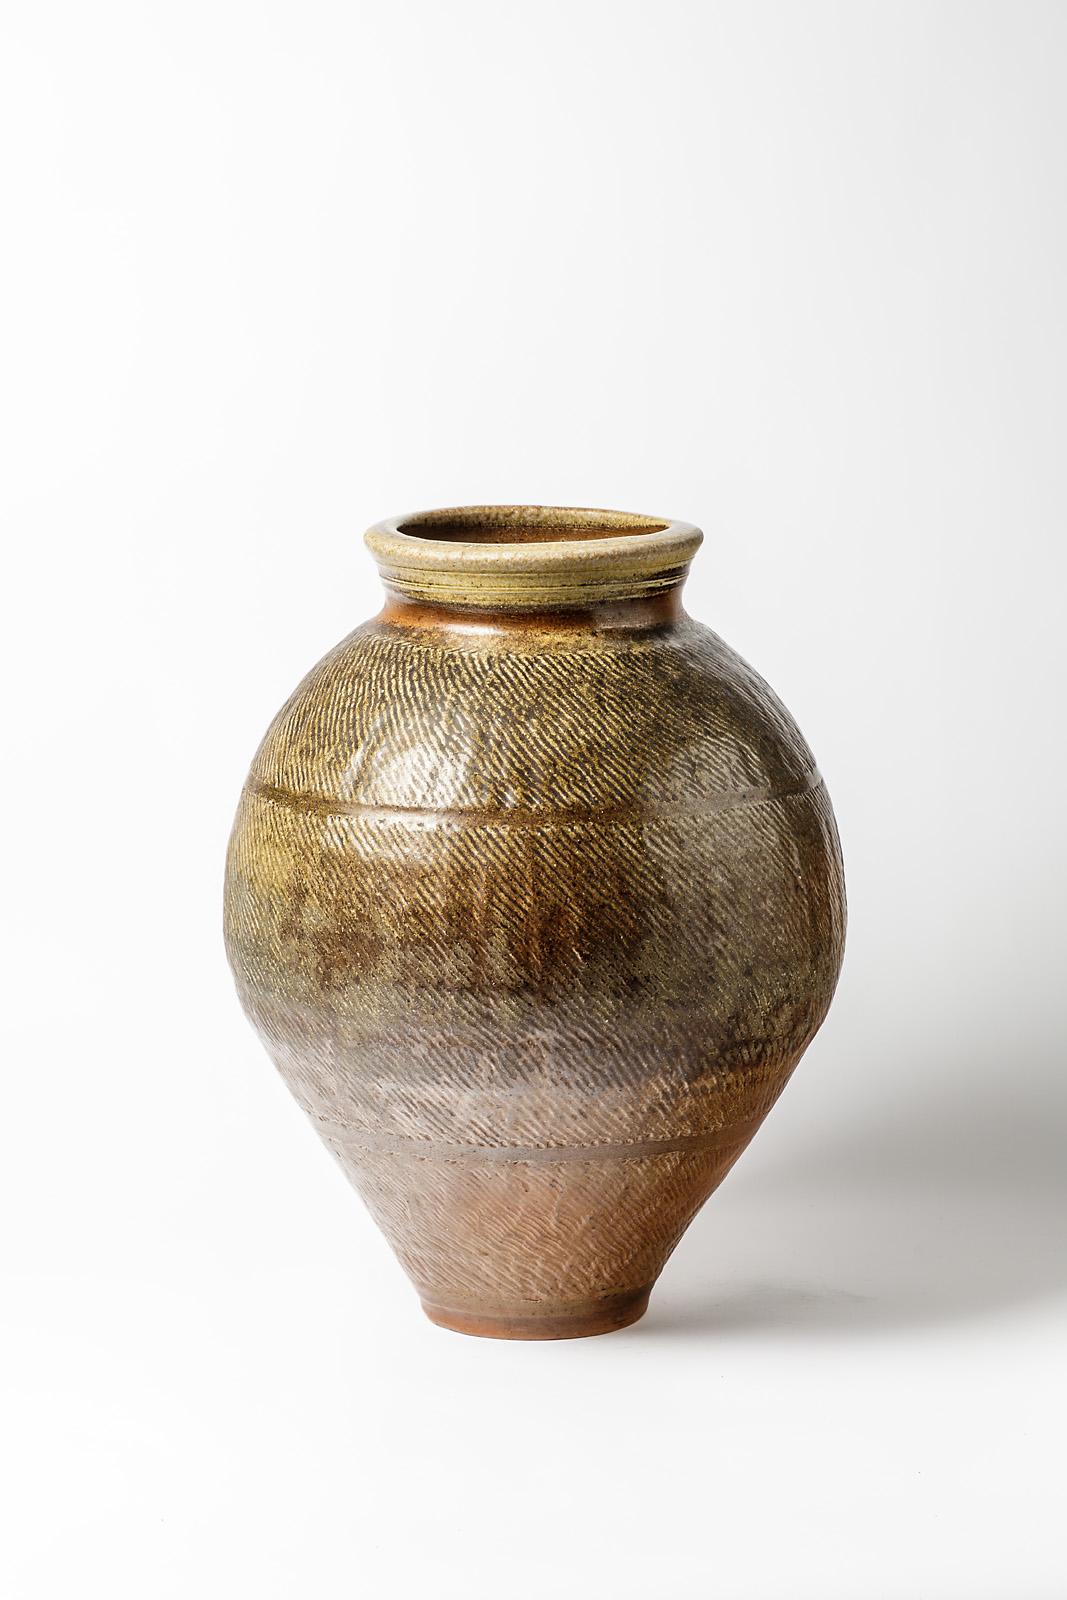 Steen Kepp - La Borne

Réalisé vers 1975-1980

Grand vase de sol en céramique de grès brun.

Signé sous la base

Condition originale parfaite

Mesures : Hauteur 49 cm
Grand 33 cm.